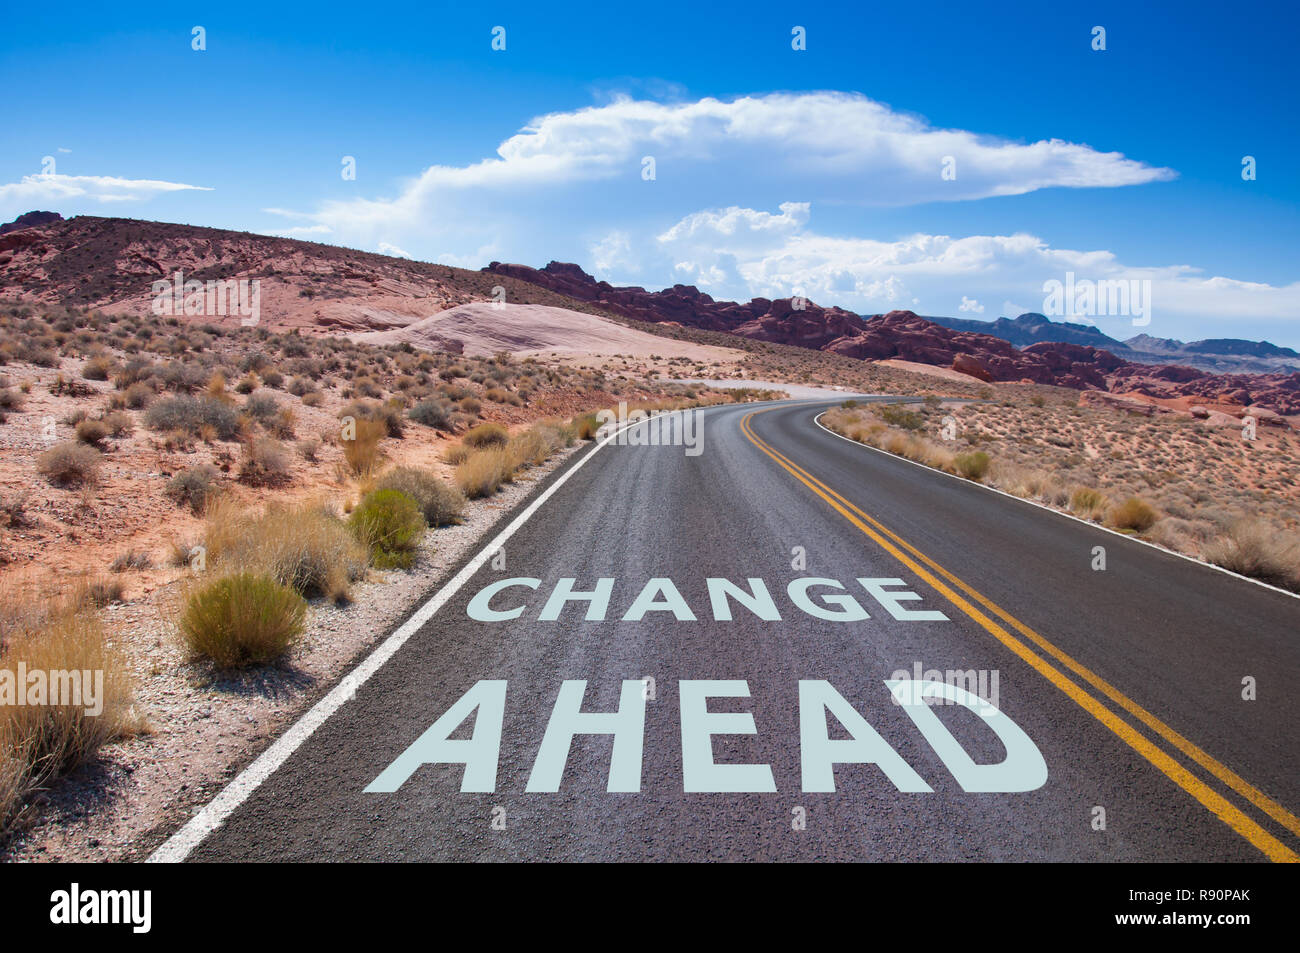 Le texte "Changer l'avenir" écrit sur un vide, dans le désert du Nevada avant la rue tourne à droite Banque D'Images